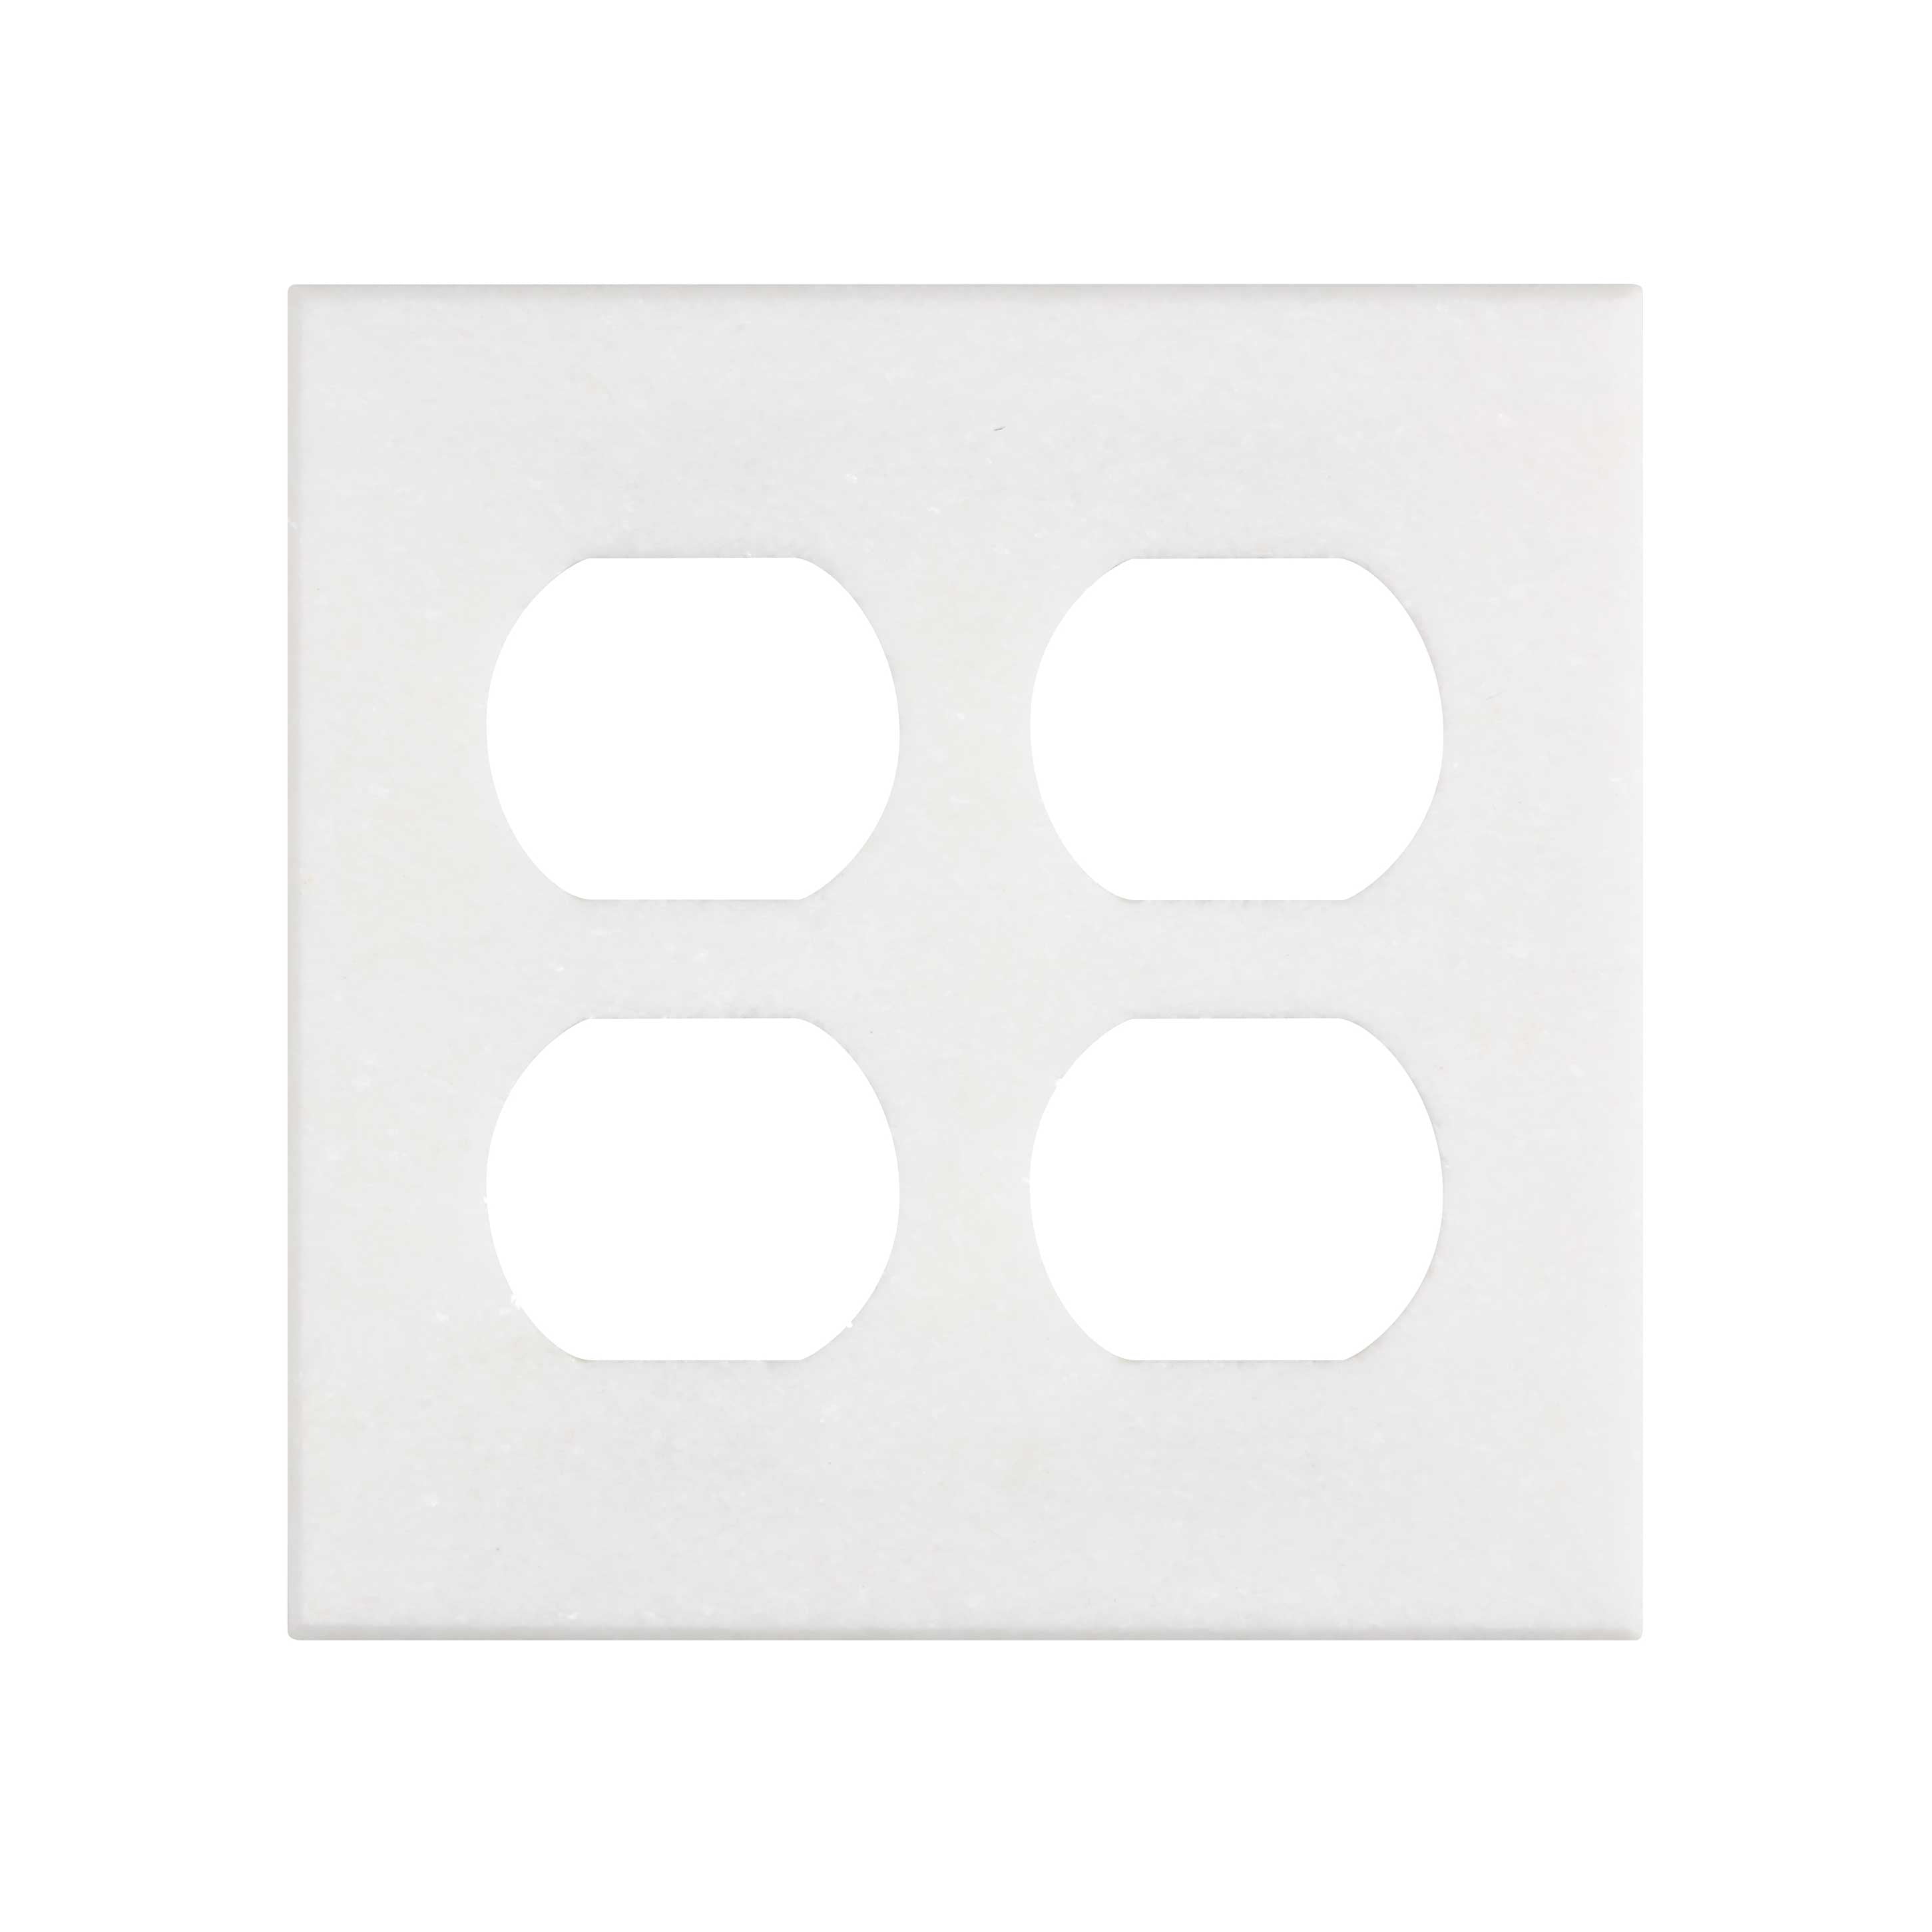 Thassos White (Greek)	Marble	2-DUPLEX	4 1/2" X 4 1/2"